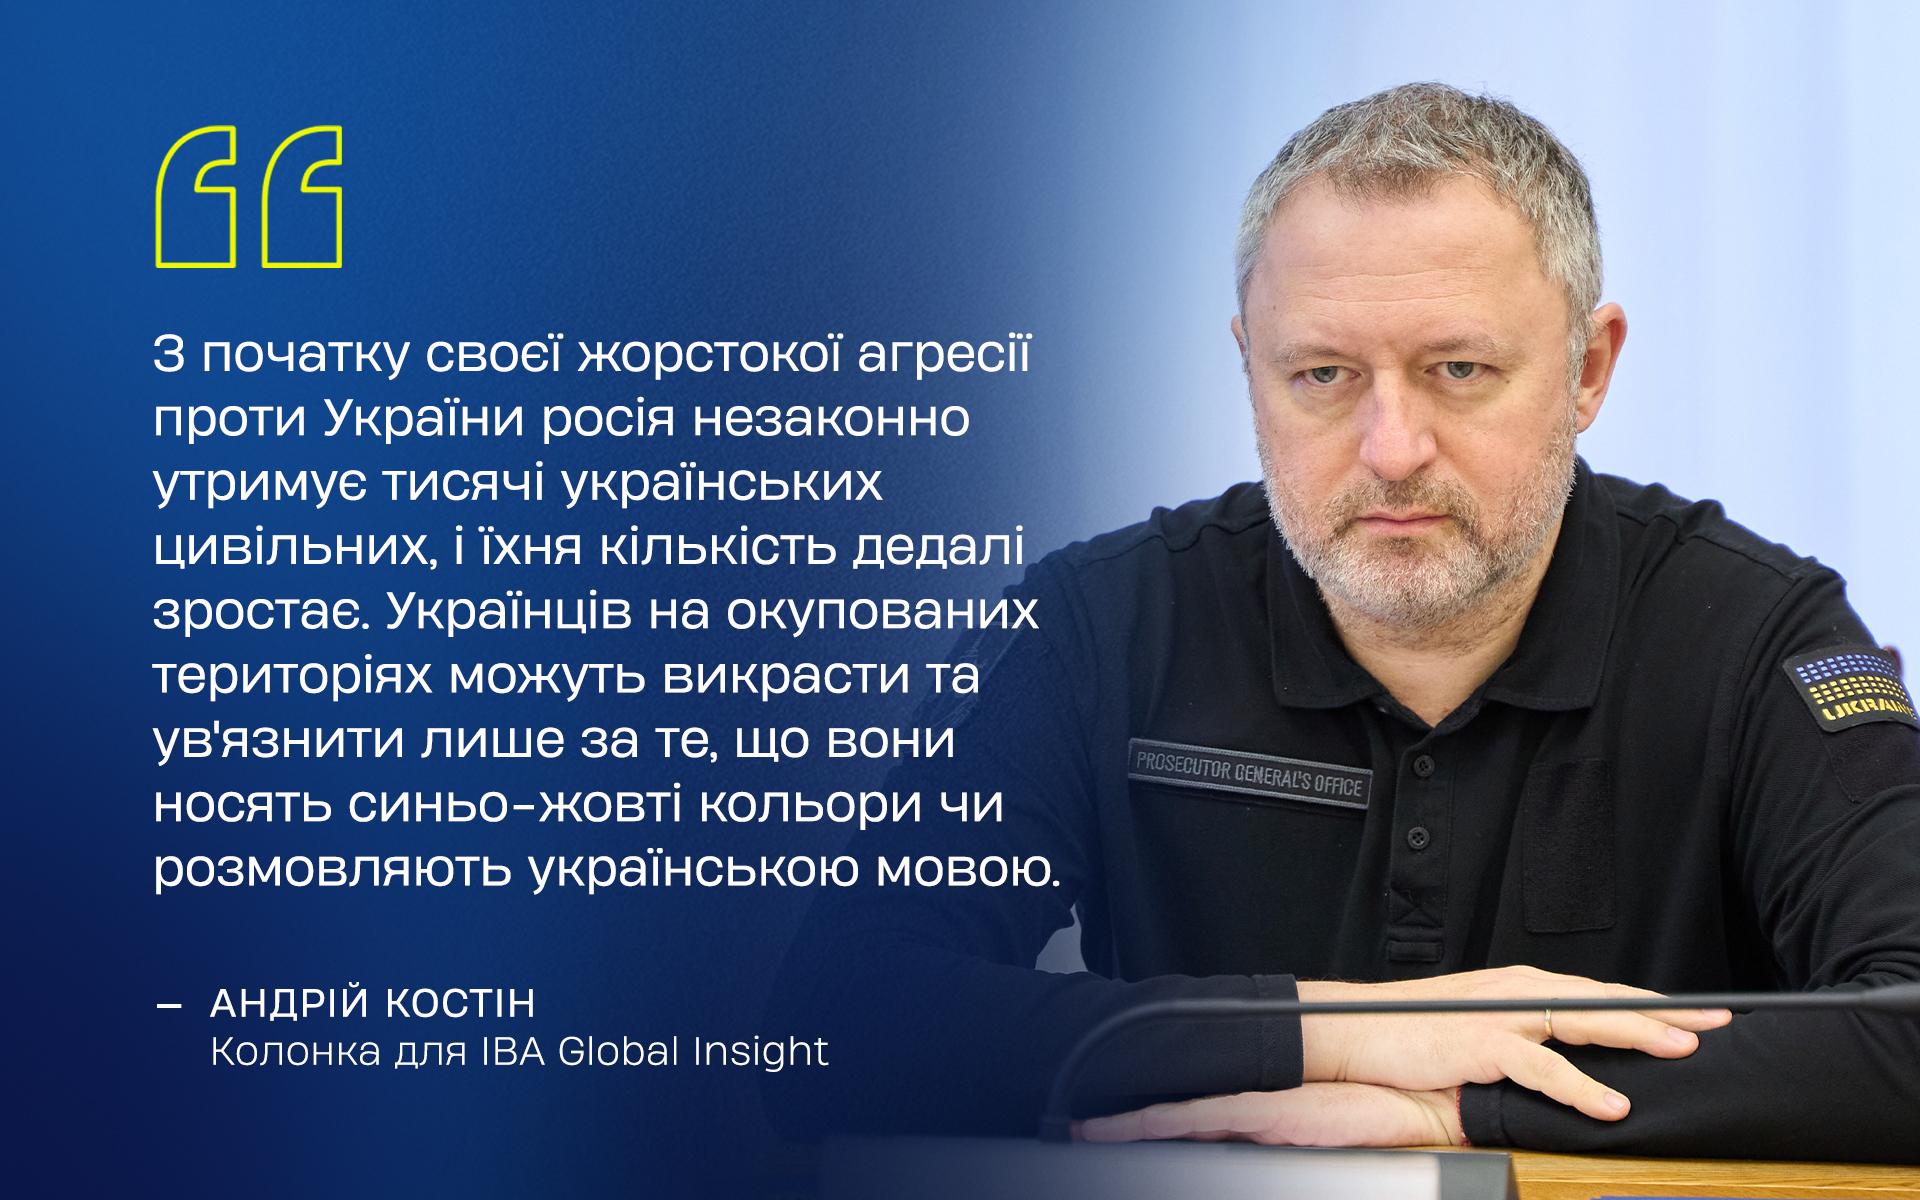 Андрій Костін у колонці для IBA Global Insight розповів про незаконне утримання агресором цивільних українців